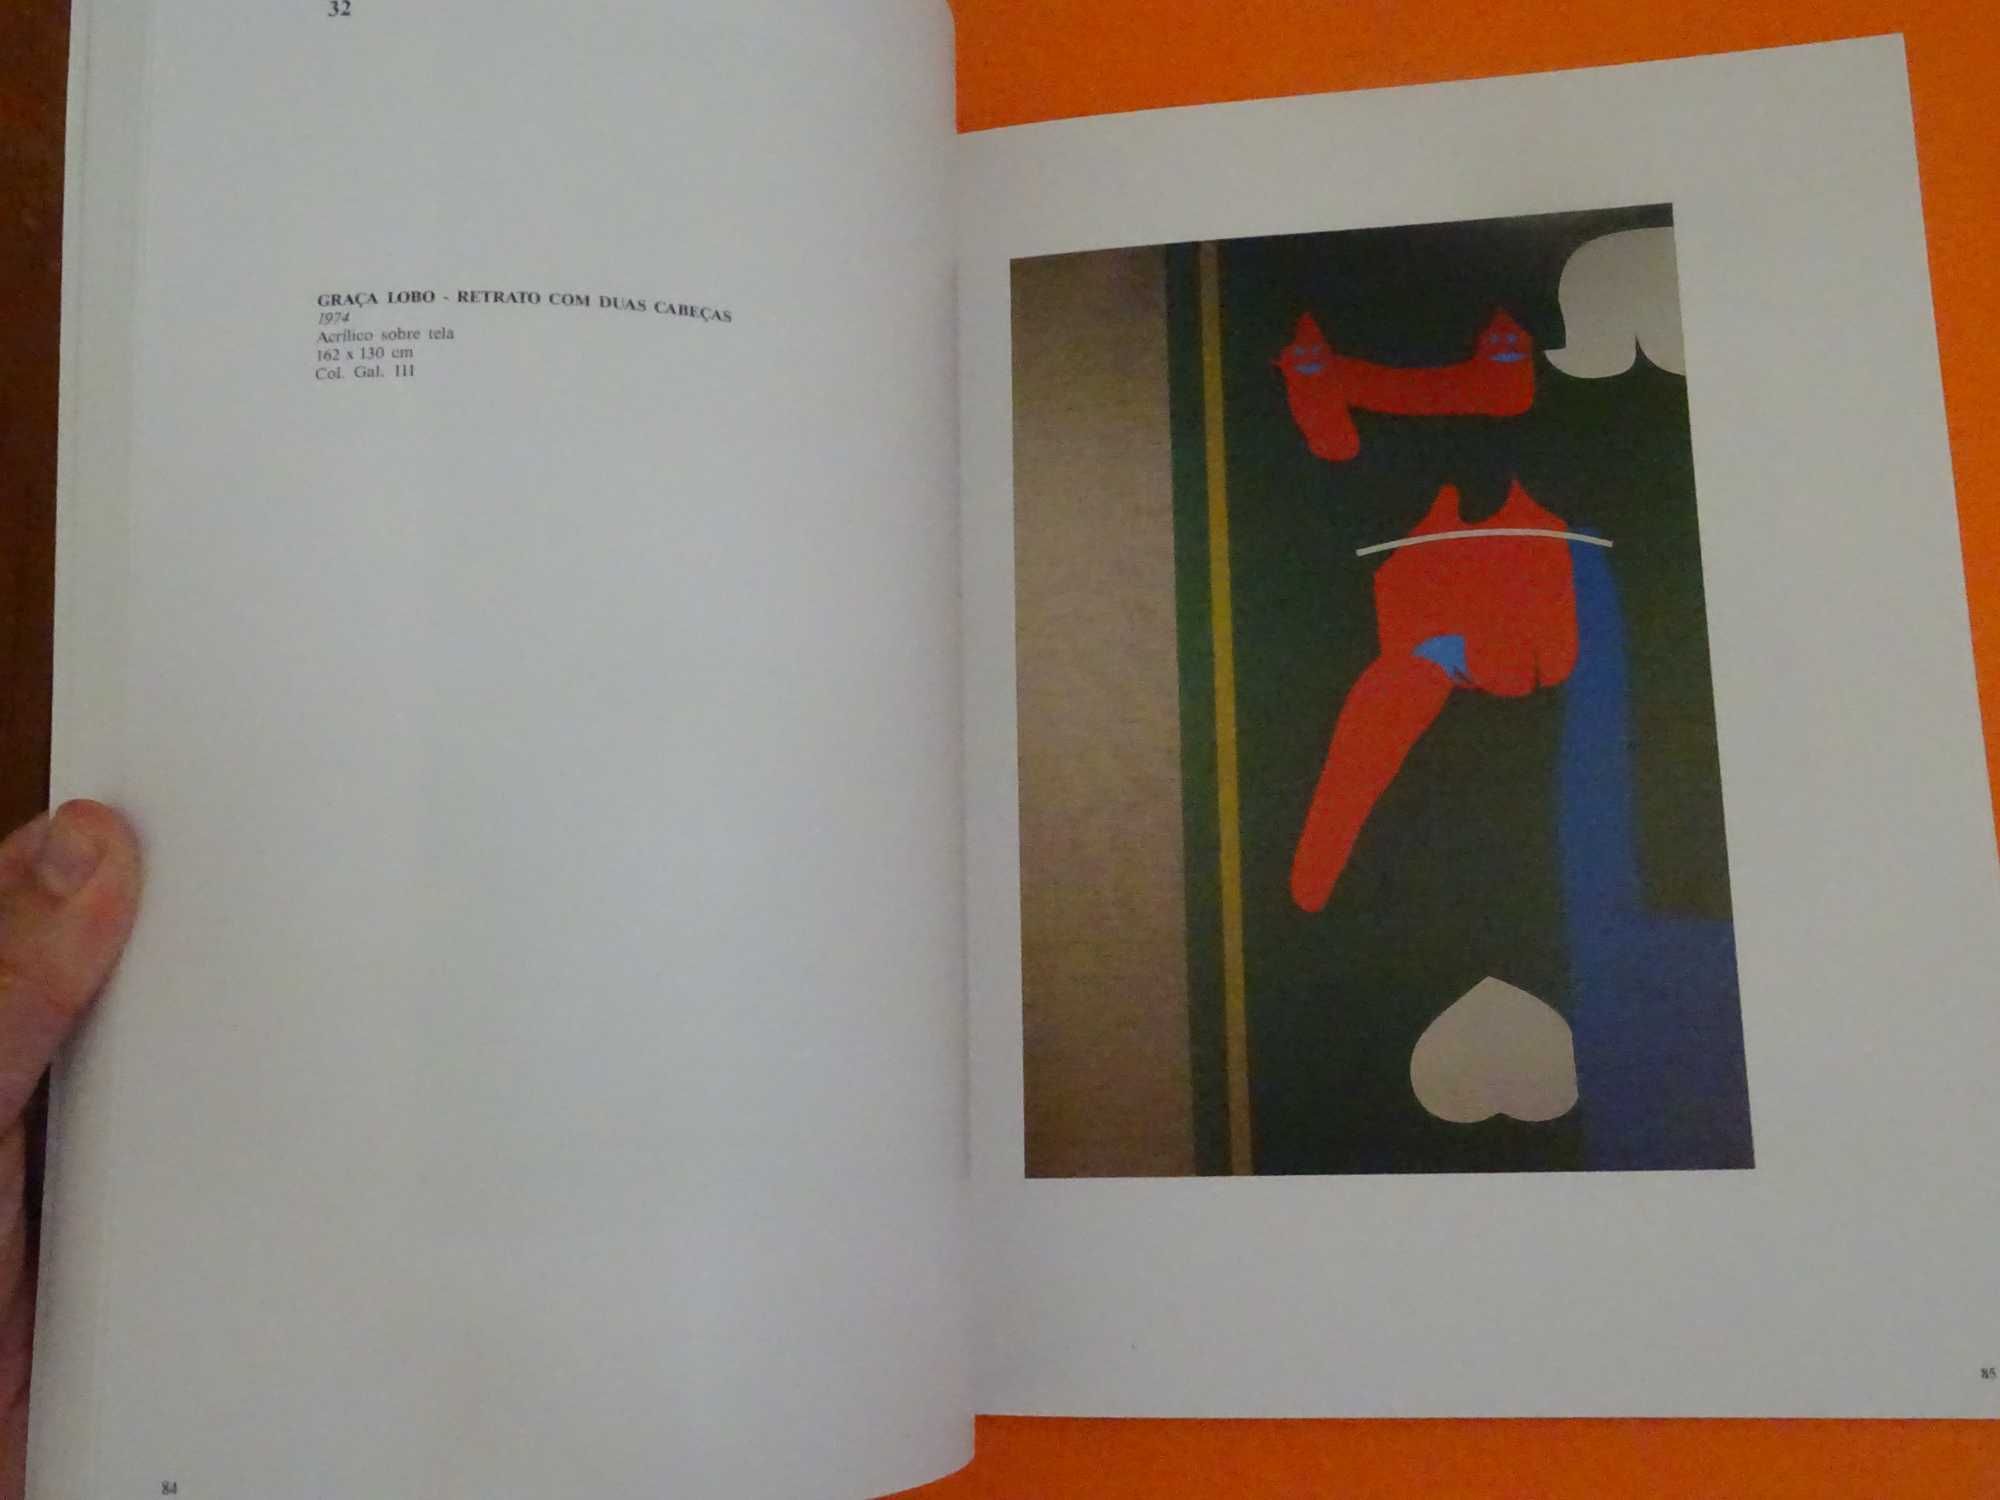 POMAR -Fundação Calouste Gulbenkian - Catálogo exposições Brasíl